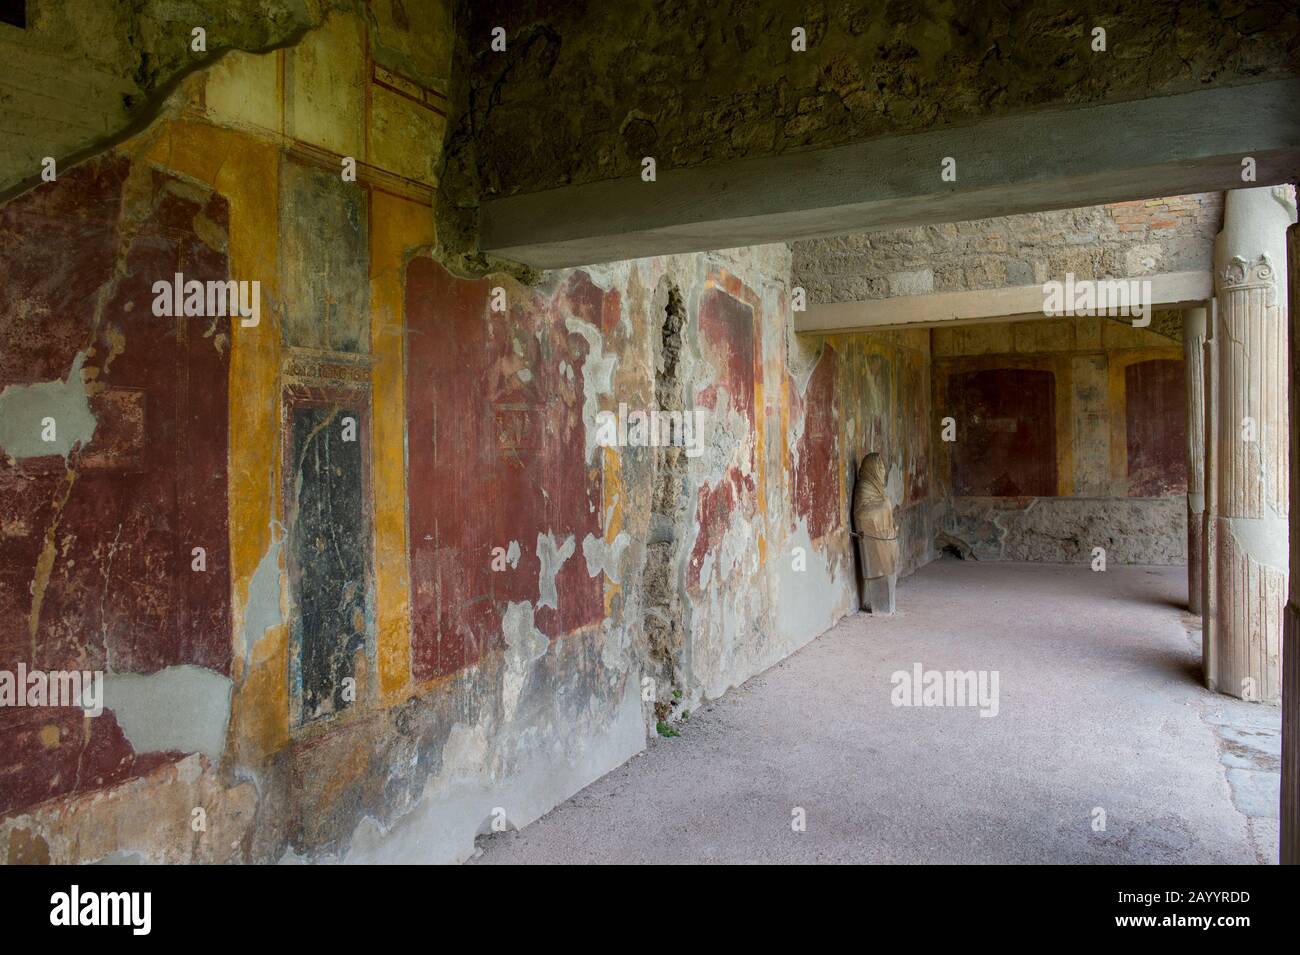 L'interno delle Terme Stabiane di Pompei, Italia, risale probabilmente al 5th secolo a.C. Foto Stock